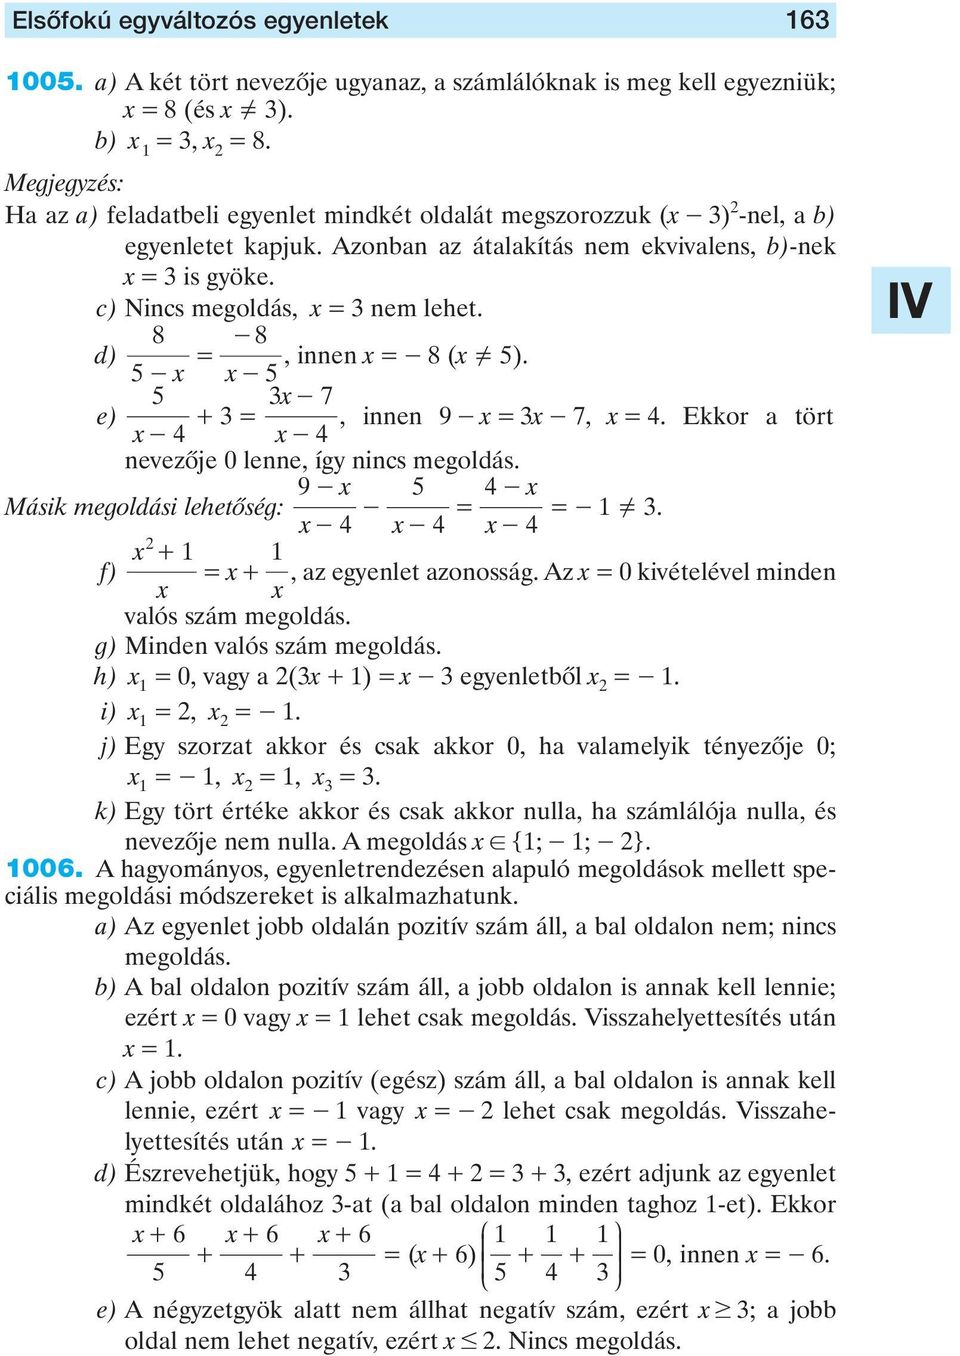 8 8 d) - x = -, innen x =-8 (x =Y ). x- e) x - + = x - 7, innen 9 - x = x - 7, x = 4. Ekkor a tört 4 x - 4 nevezôje 0 lenne, így nincs megoldás. 9 - x 4 - x Másik megoldási lehetôség: - = =- =Y.